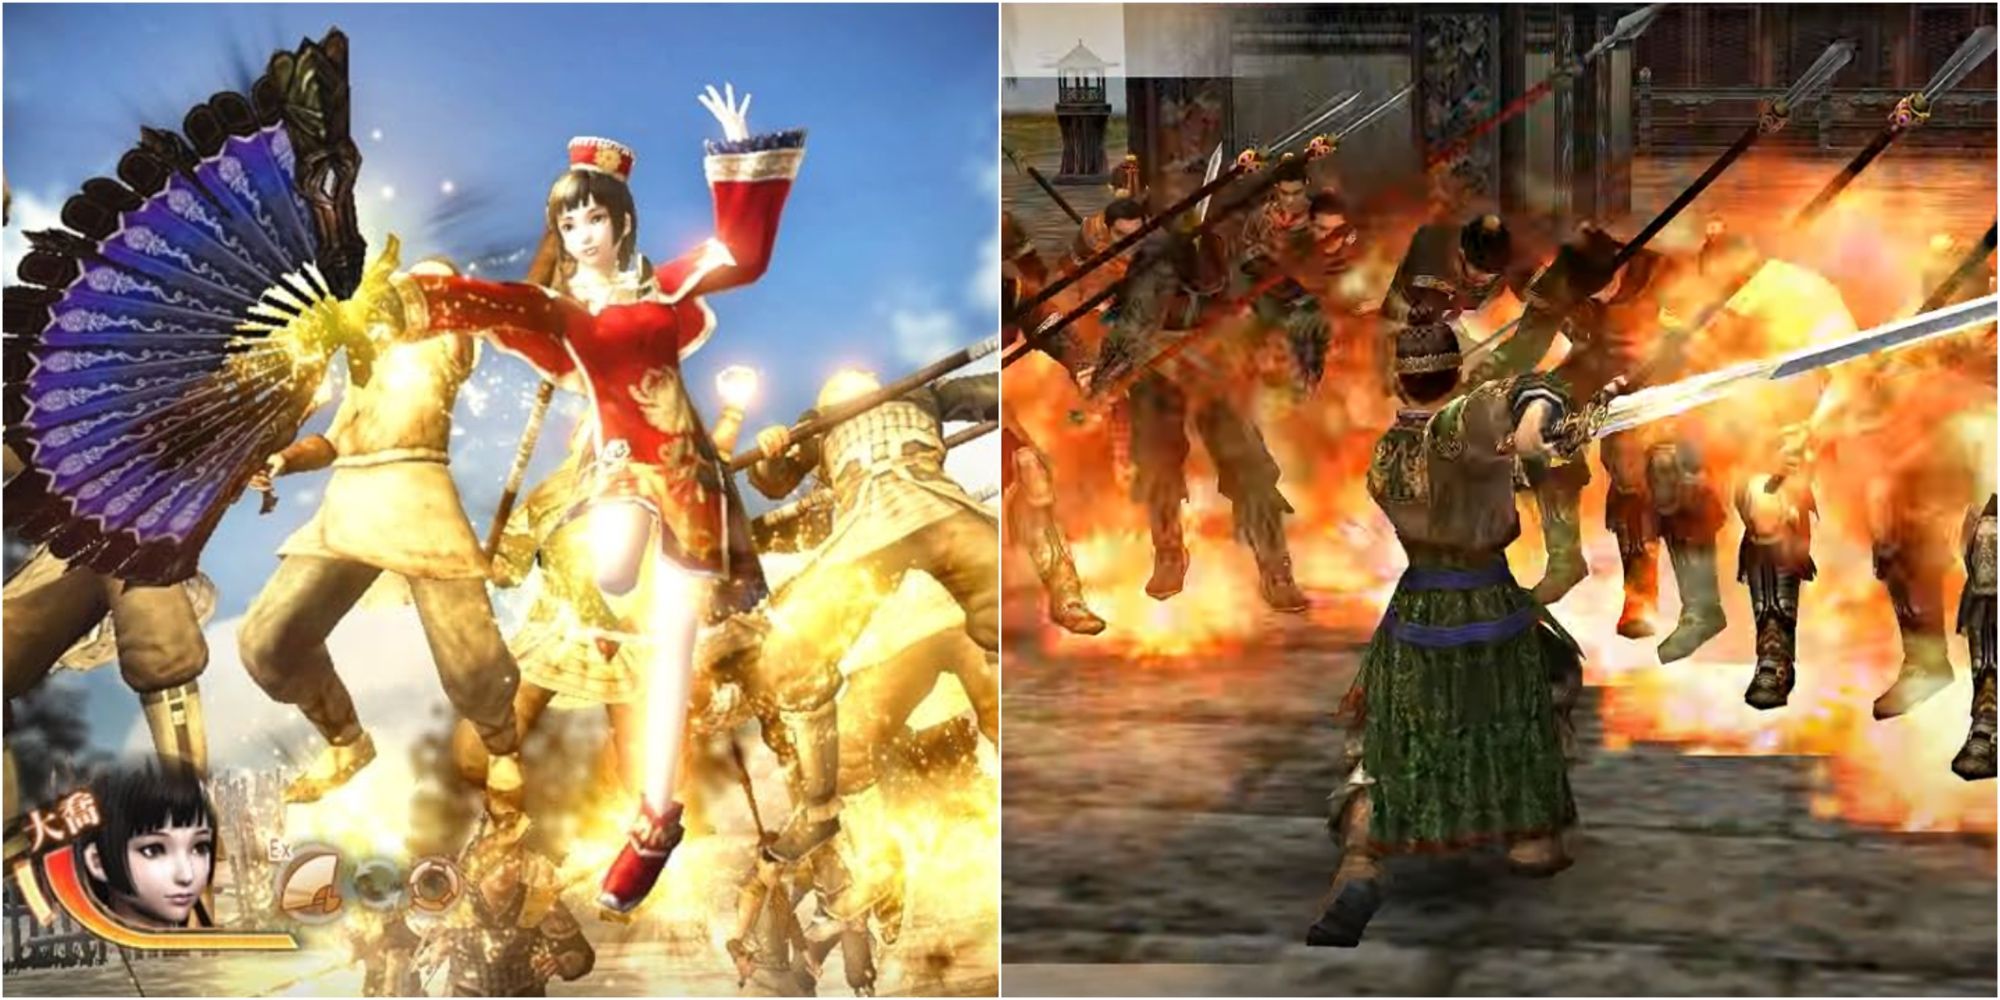 Officers slashing apart enemies in Dynasty Warriors games